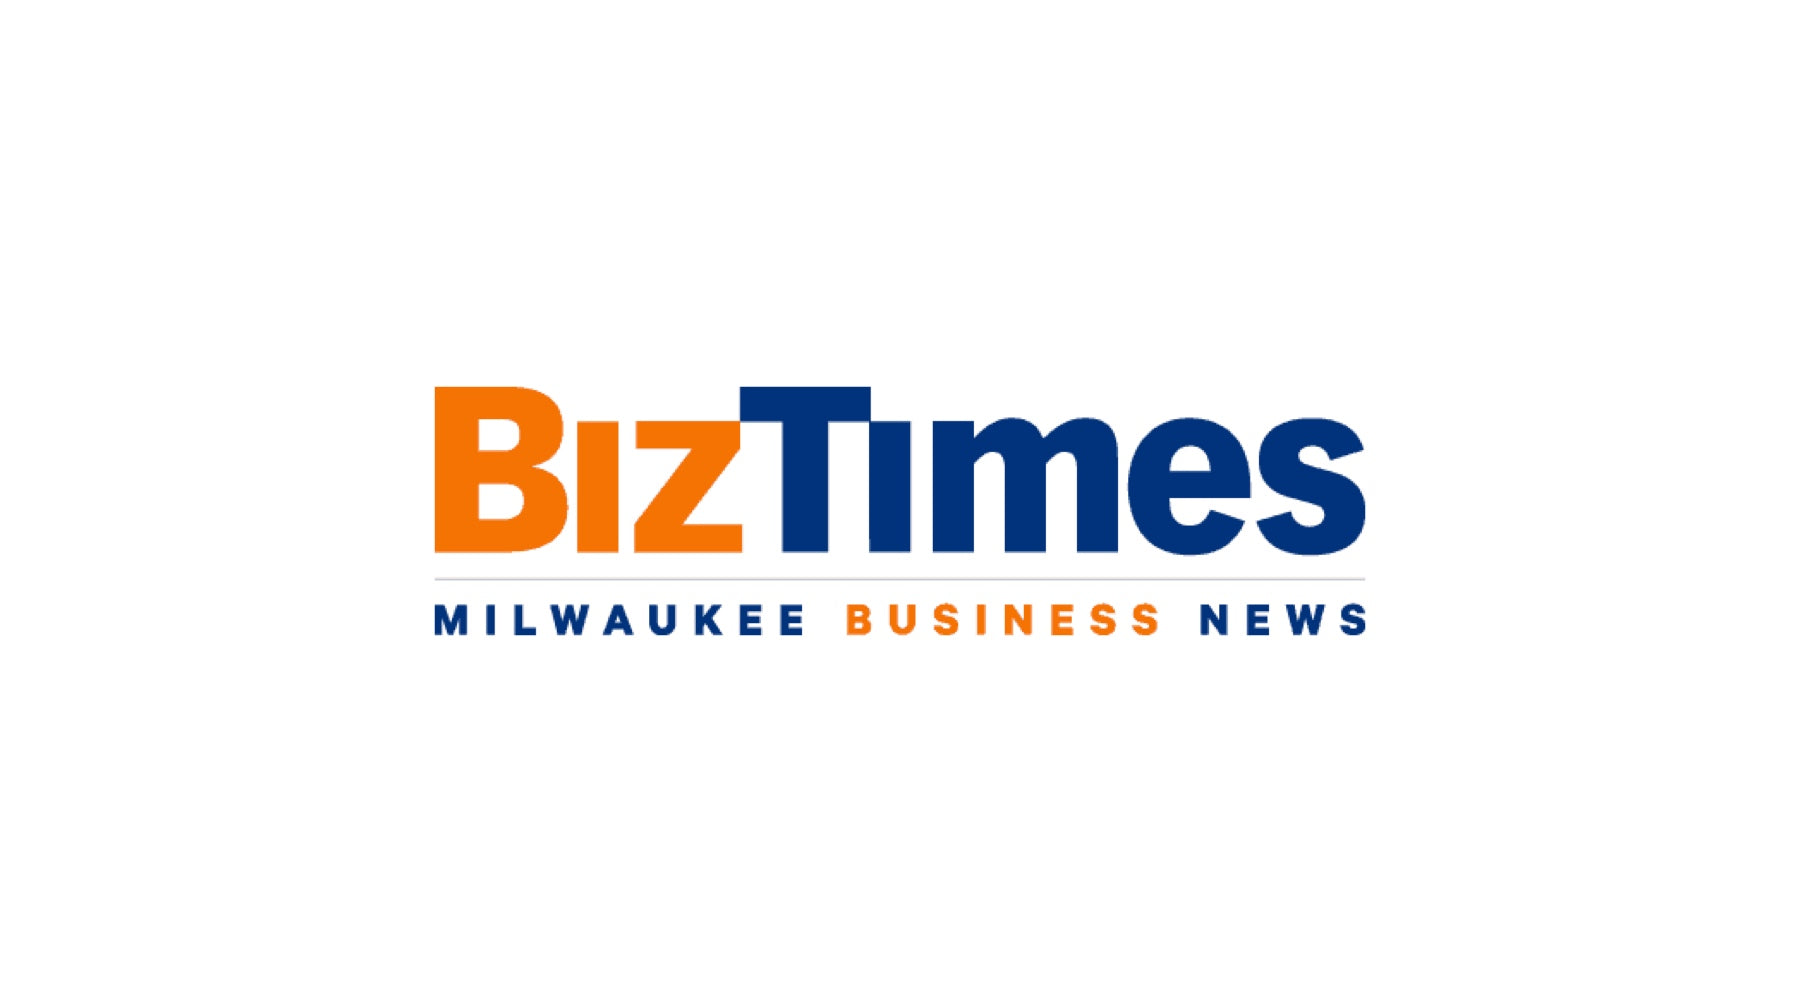 BizTimes Milwaukee Business News logo